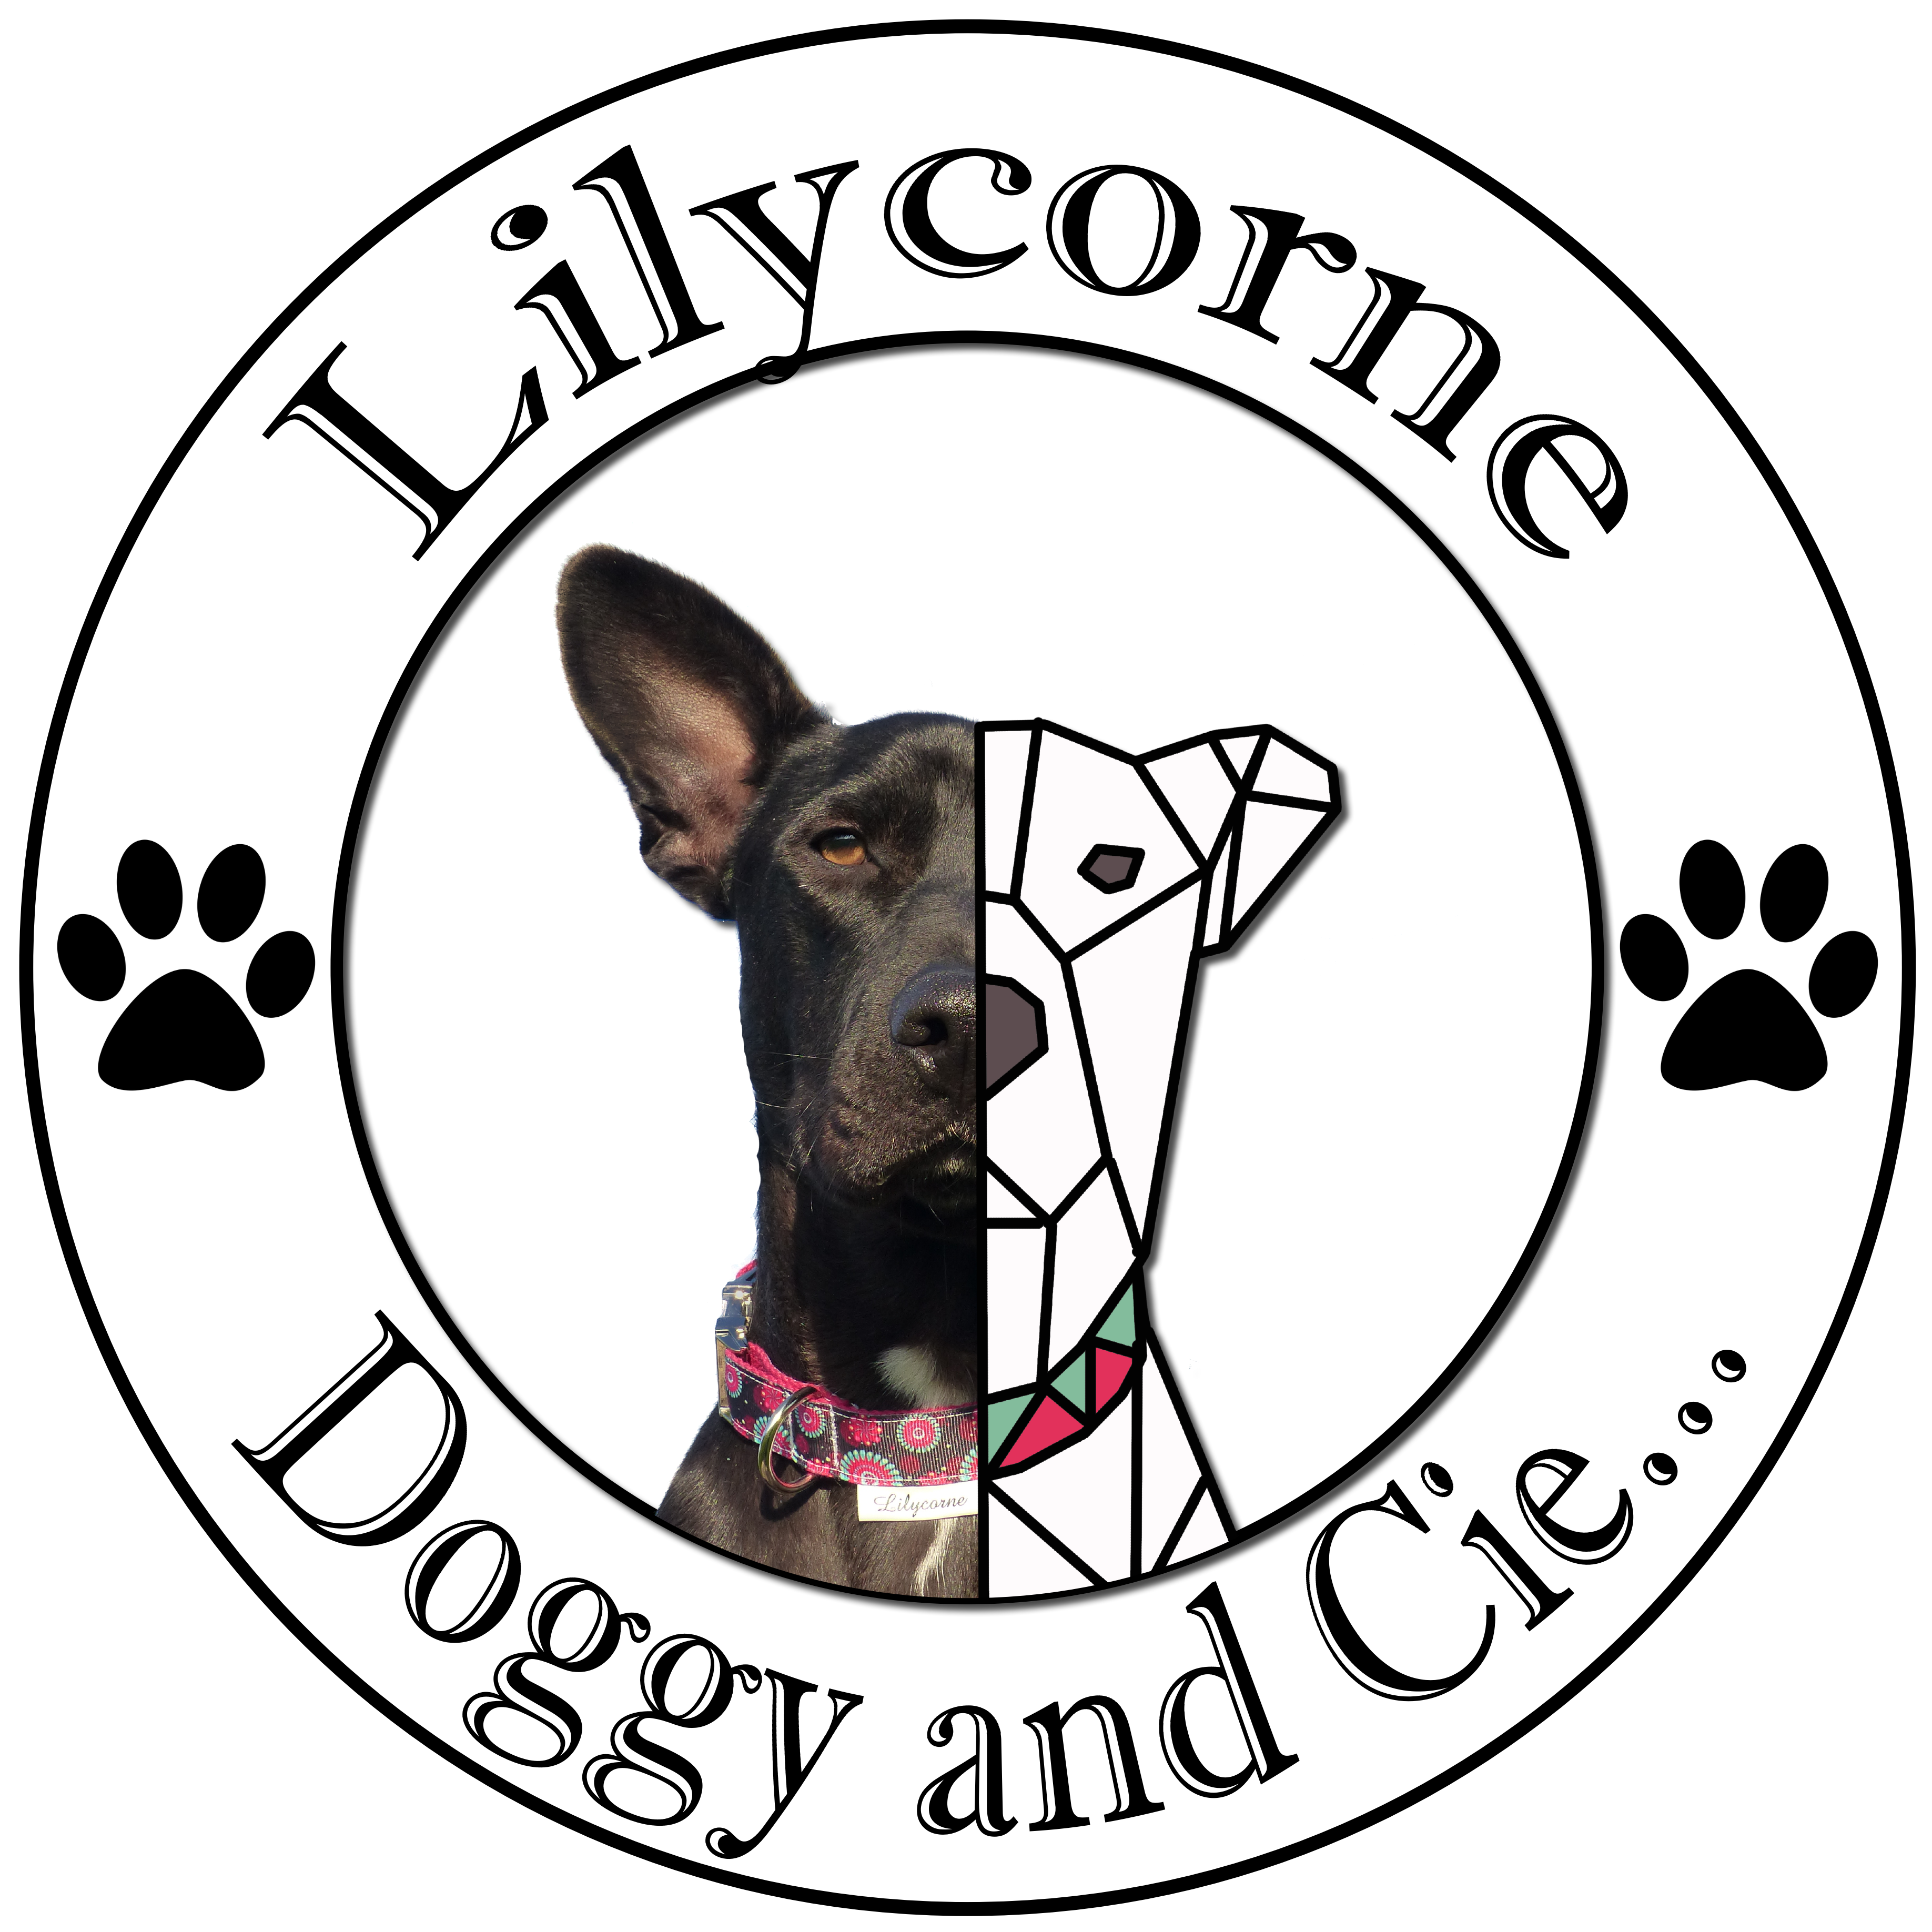 Lilycorne doggy accessoires pour chiens, chats, nac. Vous trouverez des colliers pour chiens, des laisses, des pochettes à friandises, des essuies pattes, des longes. Frabrication française fait main. Peinture personnaslisée chibi 